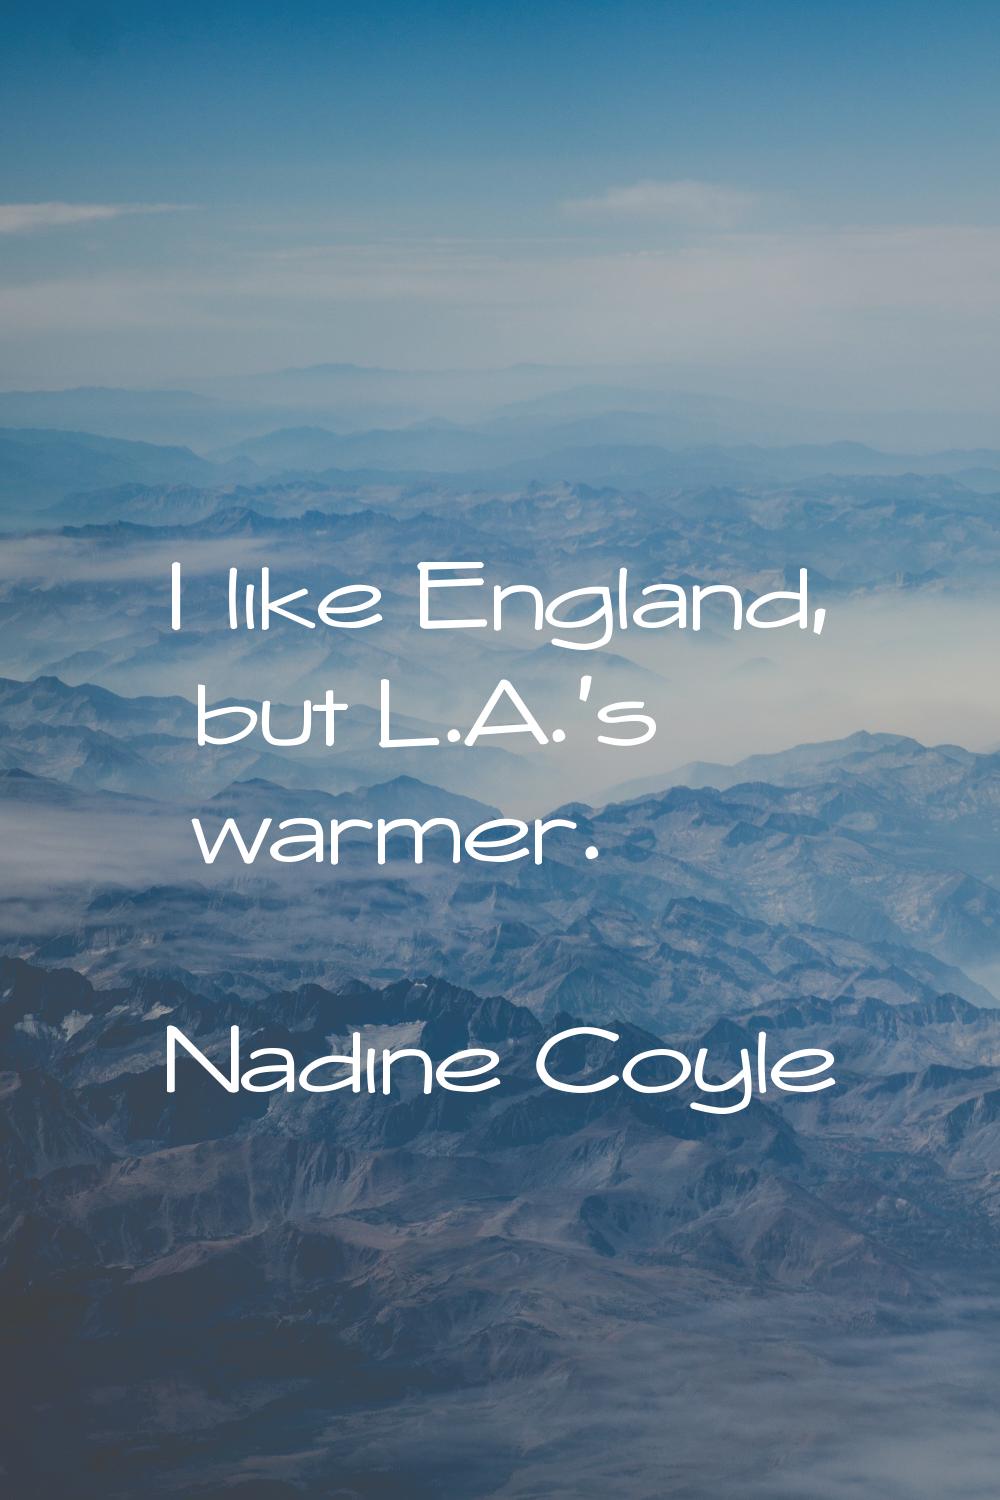 I like England, but L.A.'s warmer.